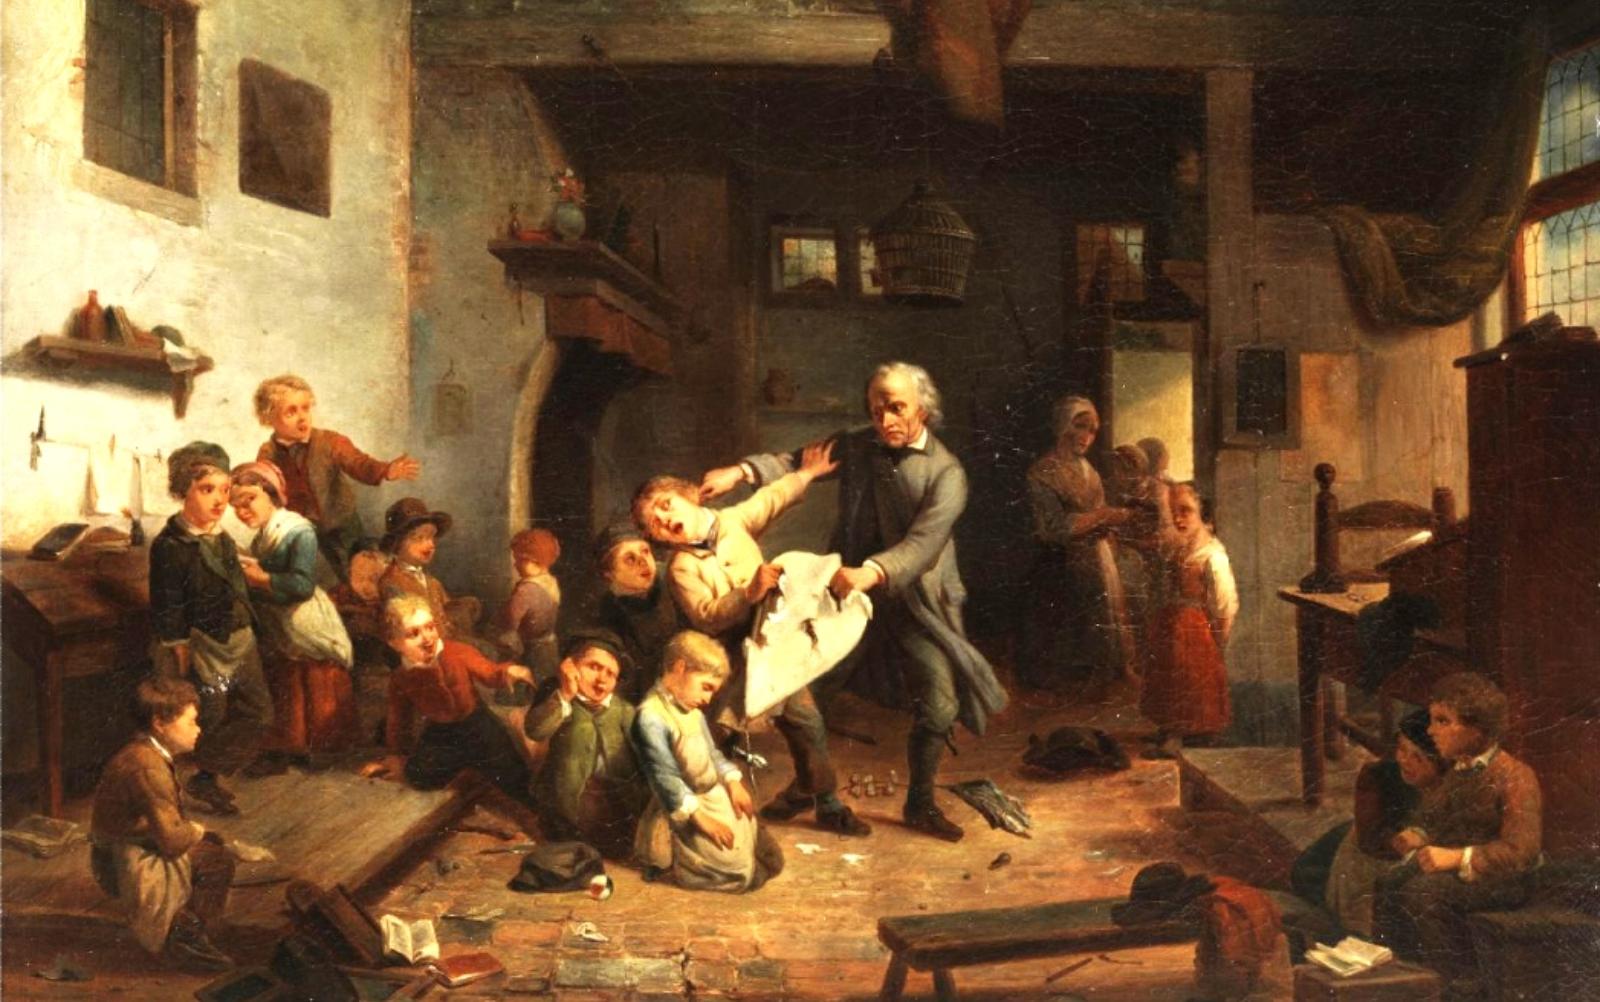 Фердинанд де Бракелер. Наказание учителем ученик, ок. 1847.